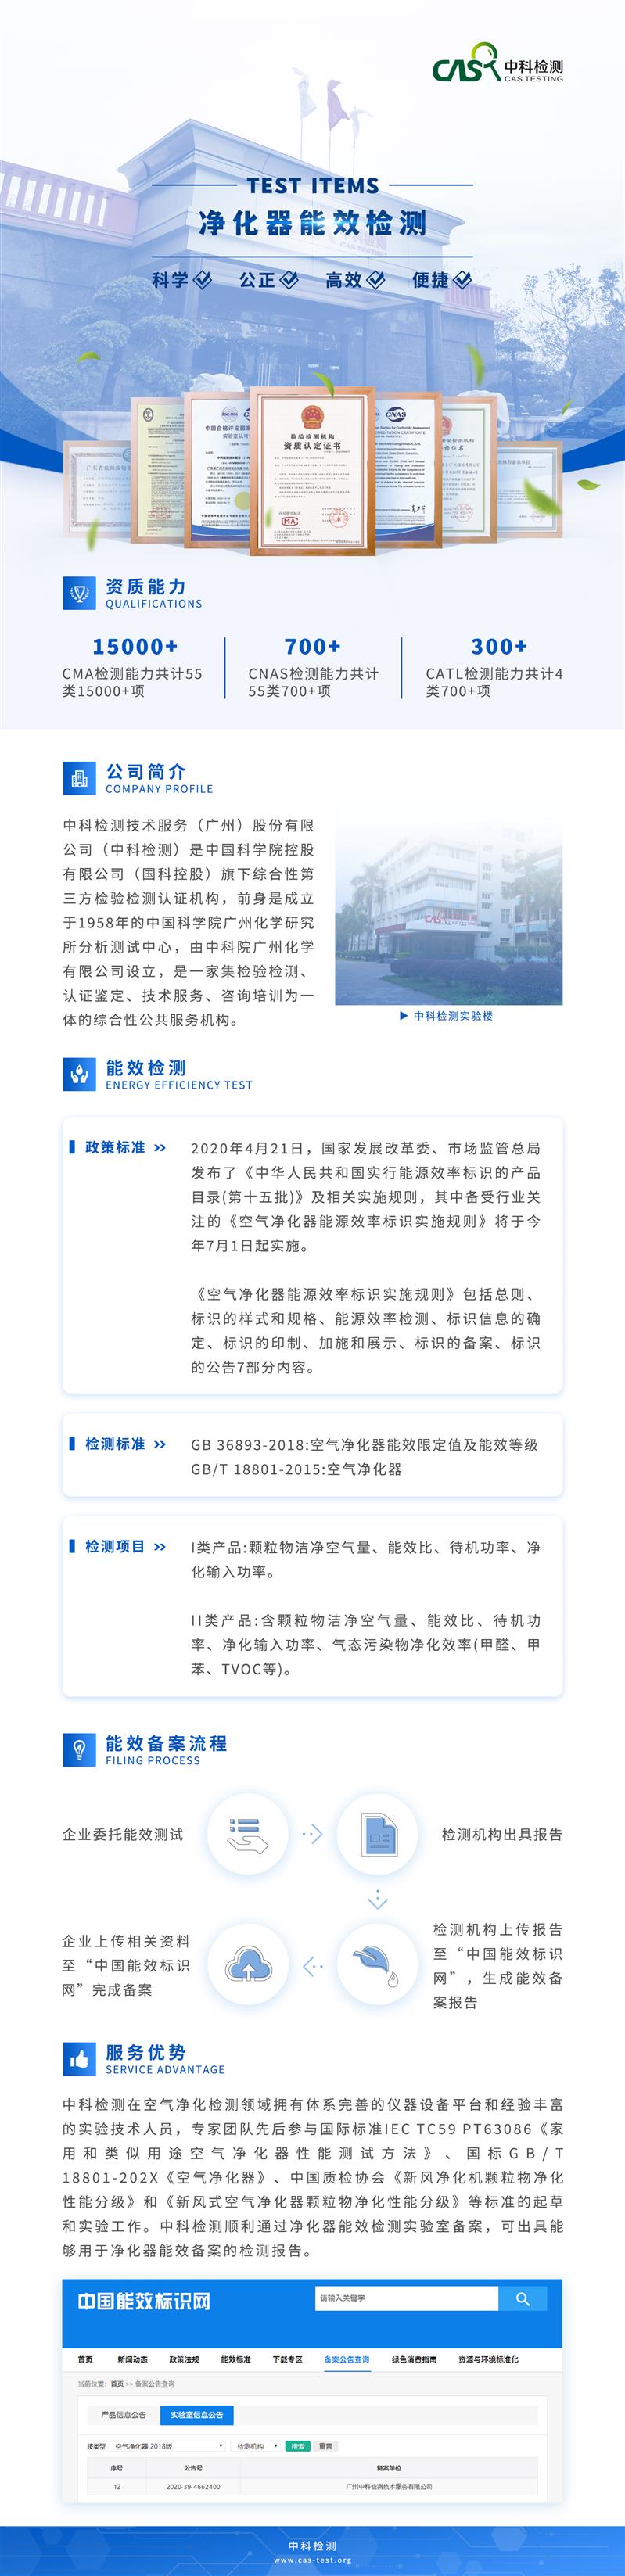 广州GB36893-2018空气净化器能效测试机构